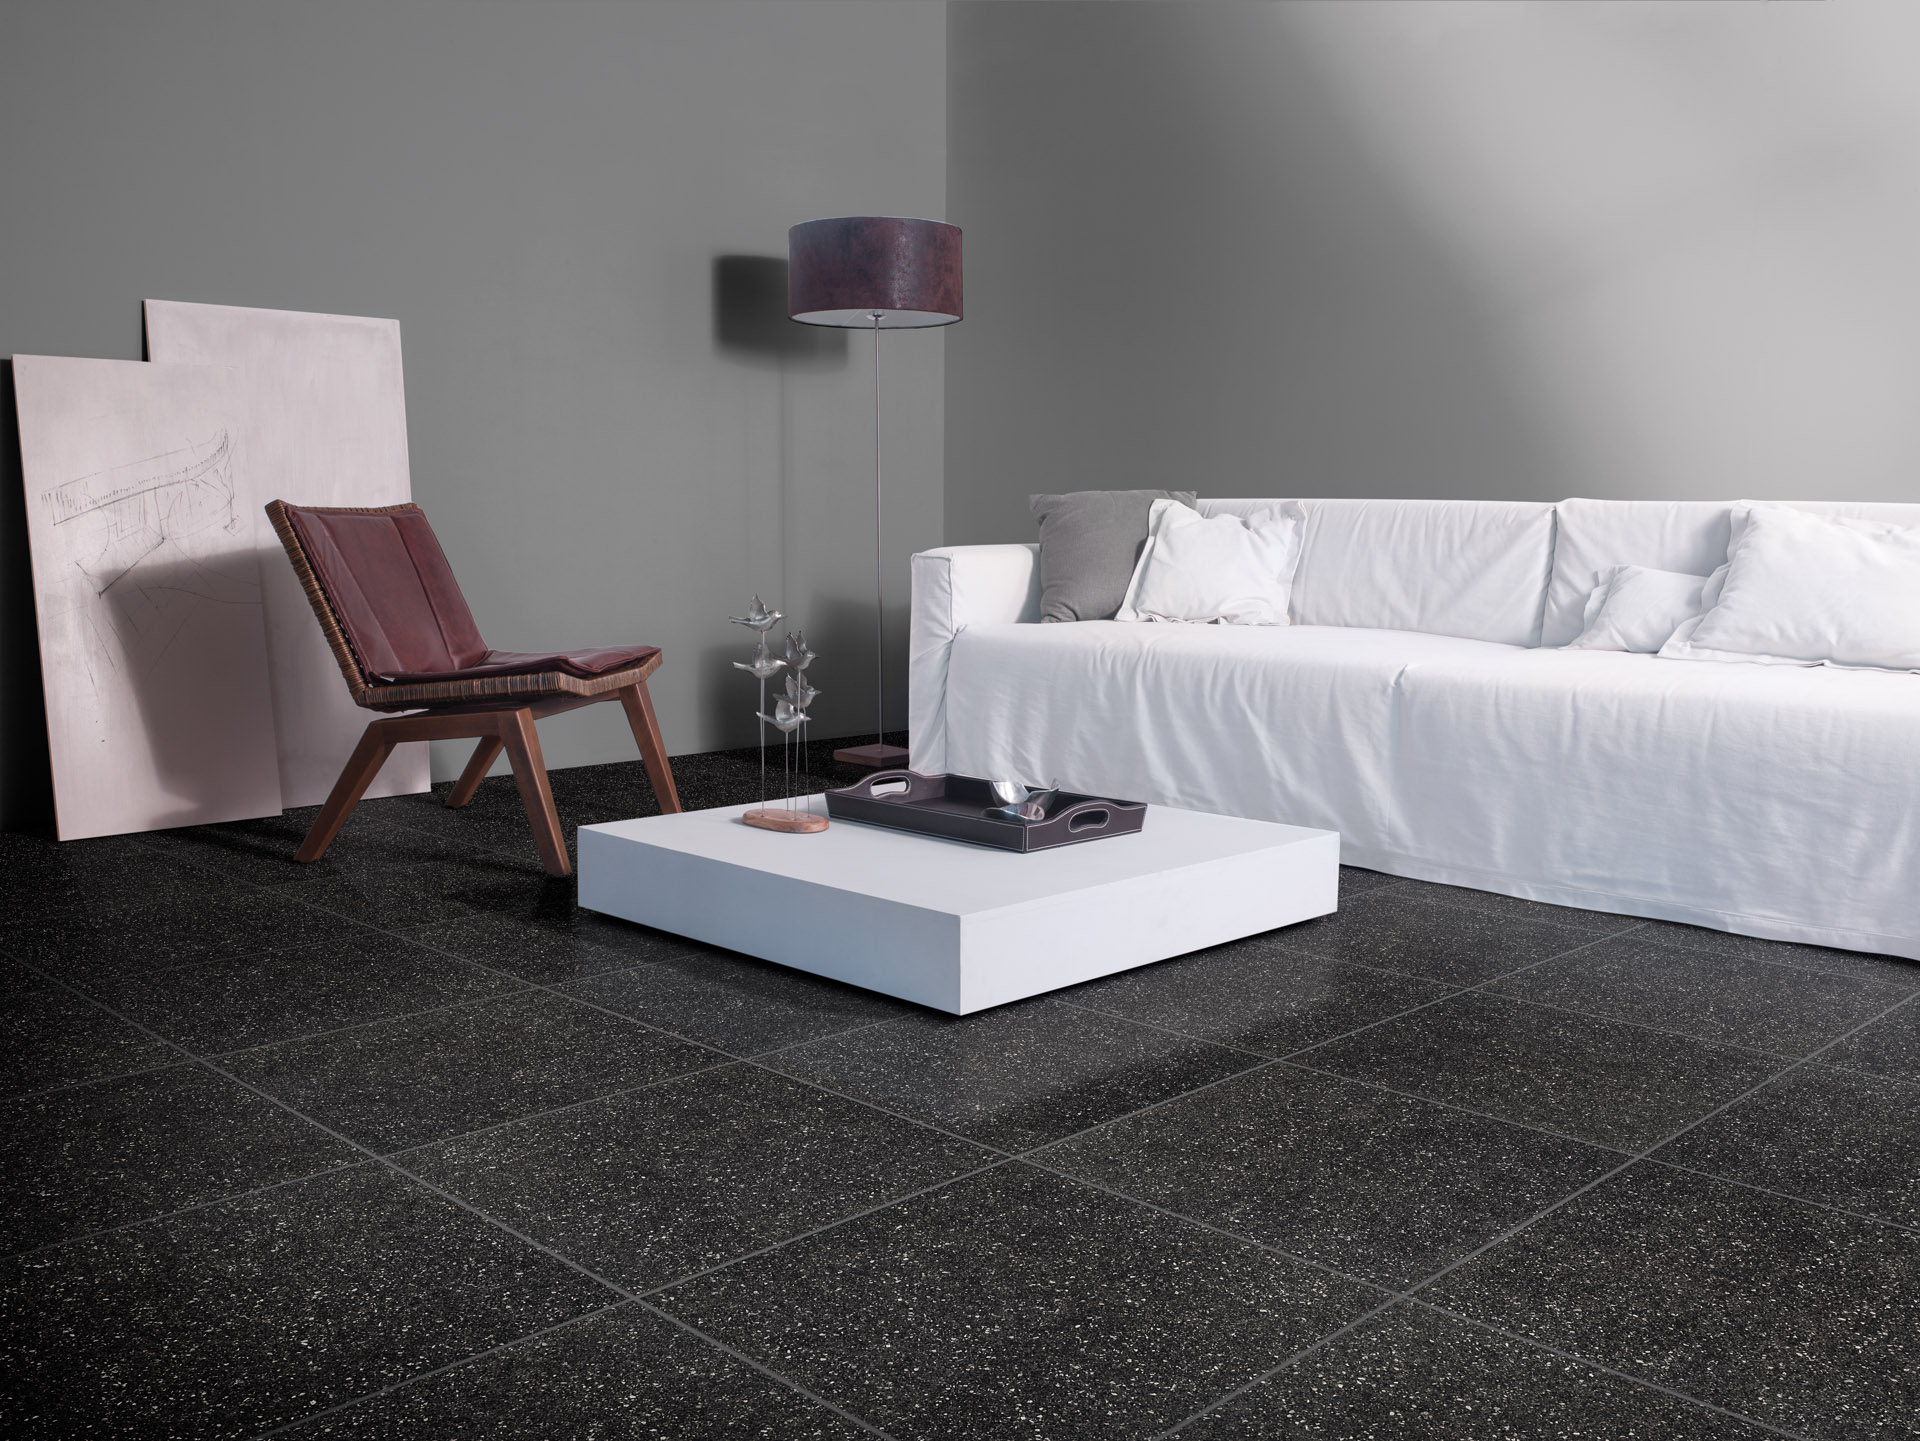 Bellini Nero, no piso, promove contraste com o sofá neutro branco, compondo um ambiente com visual urbano